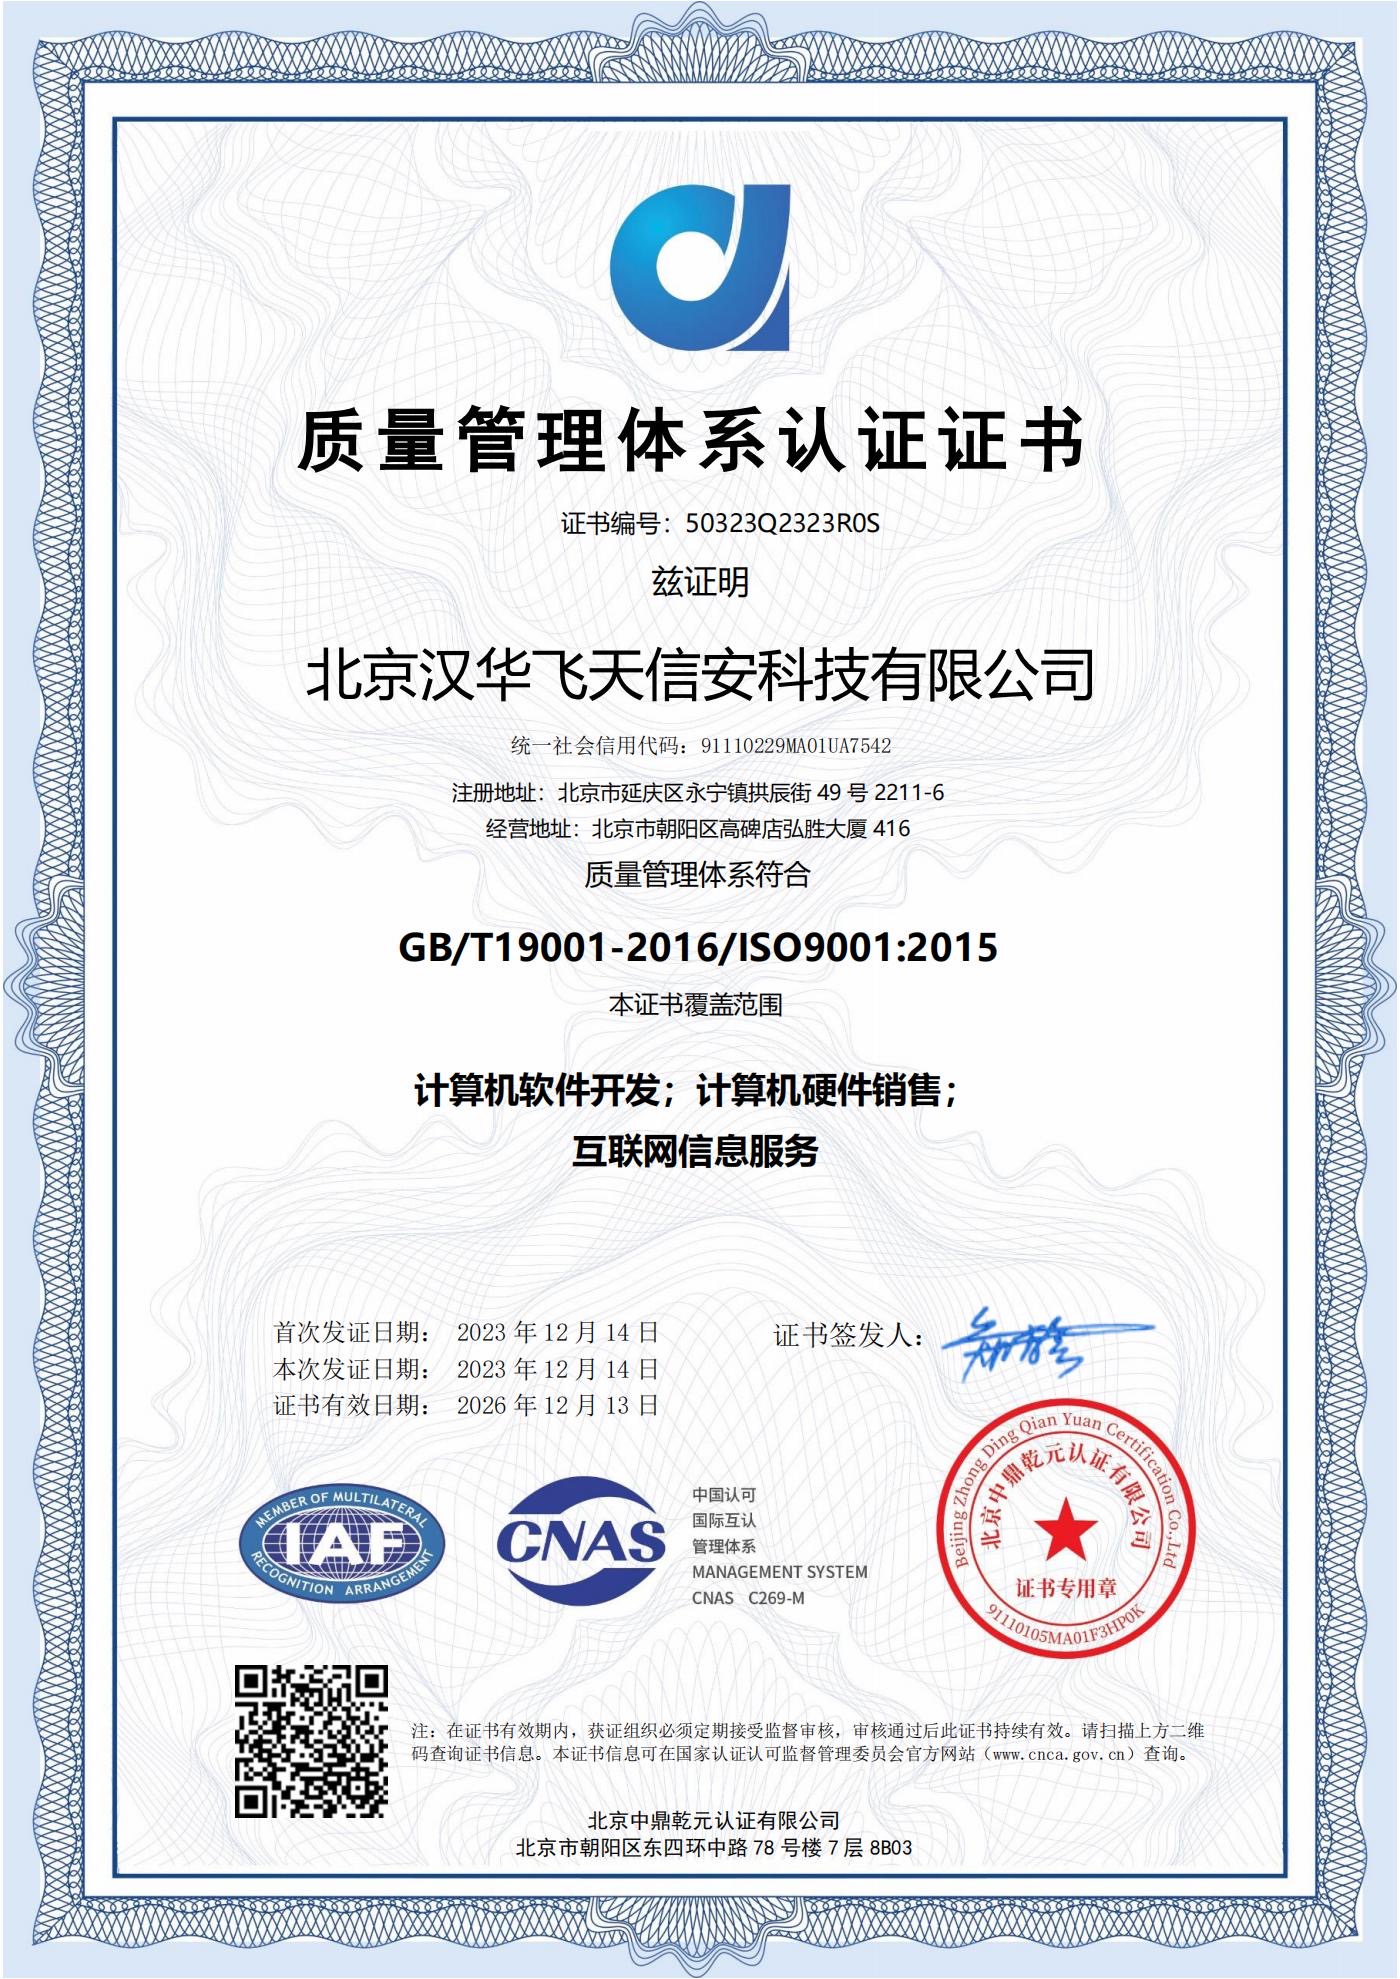 汉华信安 | 获取ISO9001质量管理体系认证证书